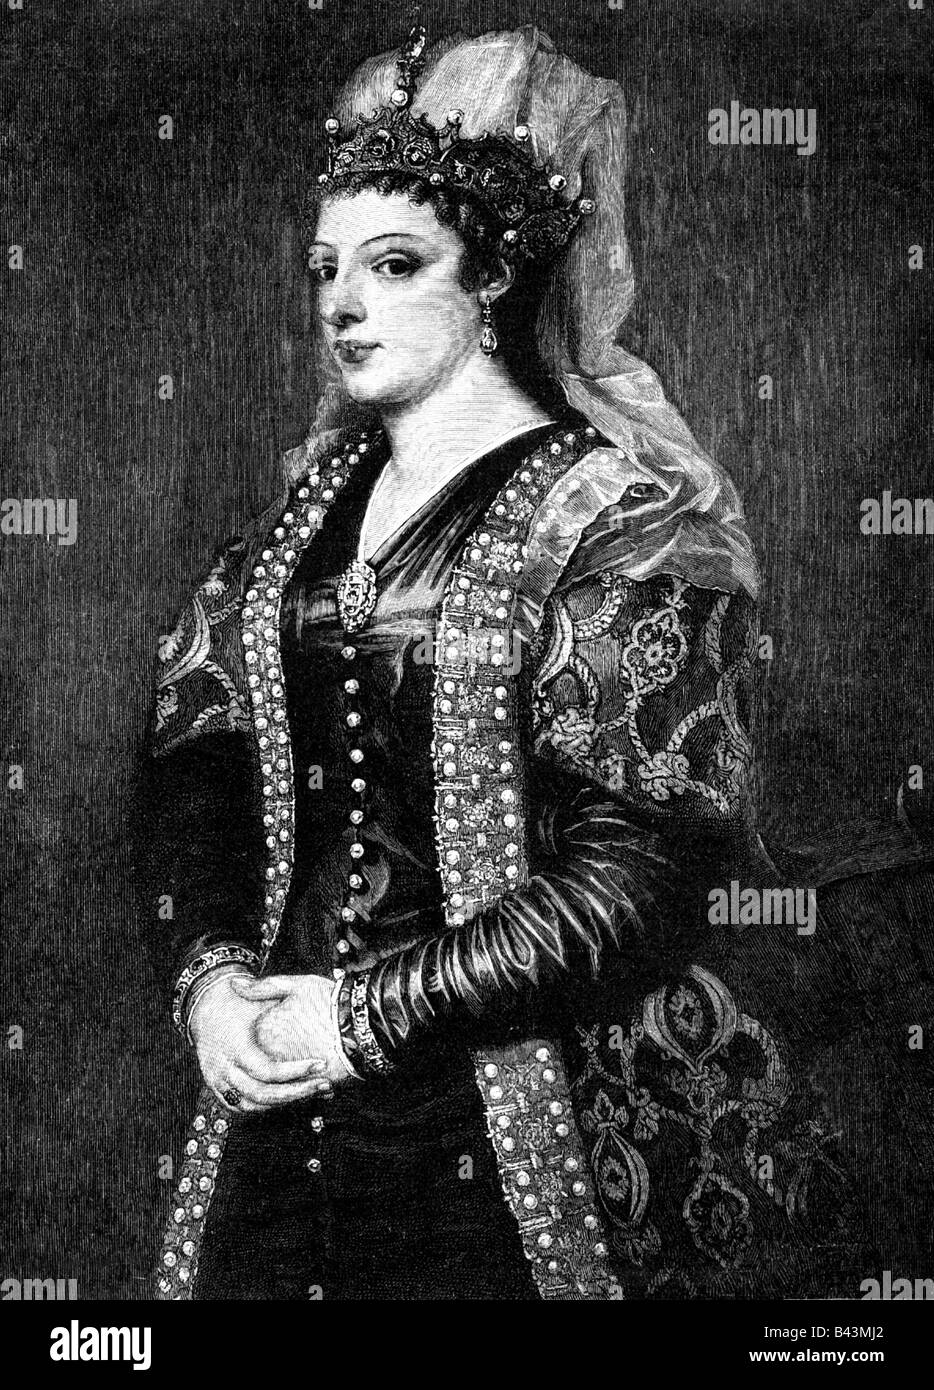 Cornaro, Catarina, 25.11.1454 - 10.7.1510, Reine de Jérusalem, l'Arménie et Chypre 1474 - 1489, demi-longueur, gravure sur cuivre après peinture, attribué à l'artiste Tizian, , n'a pas d'auteur pour être effacé Banque D'Images